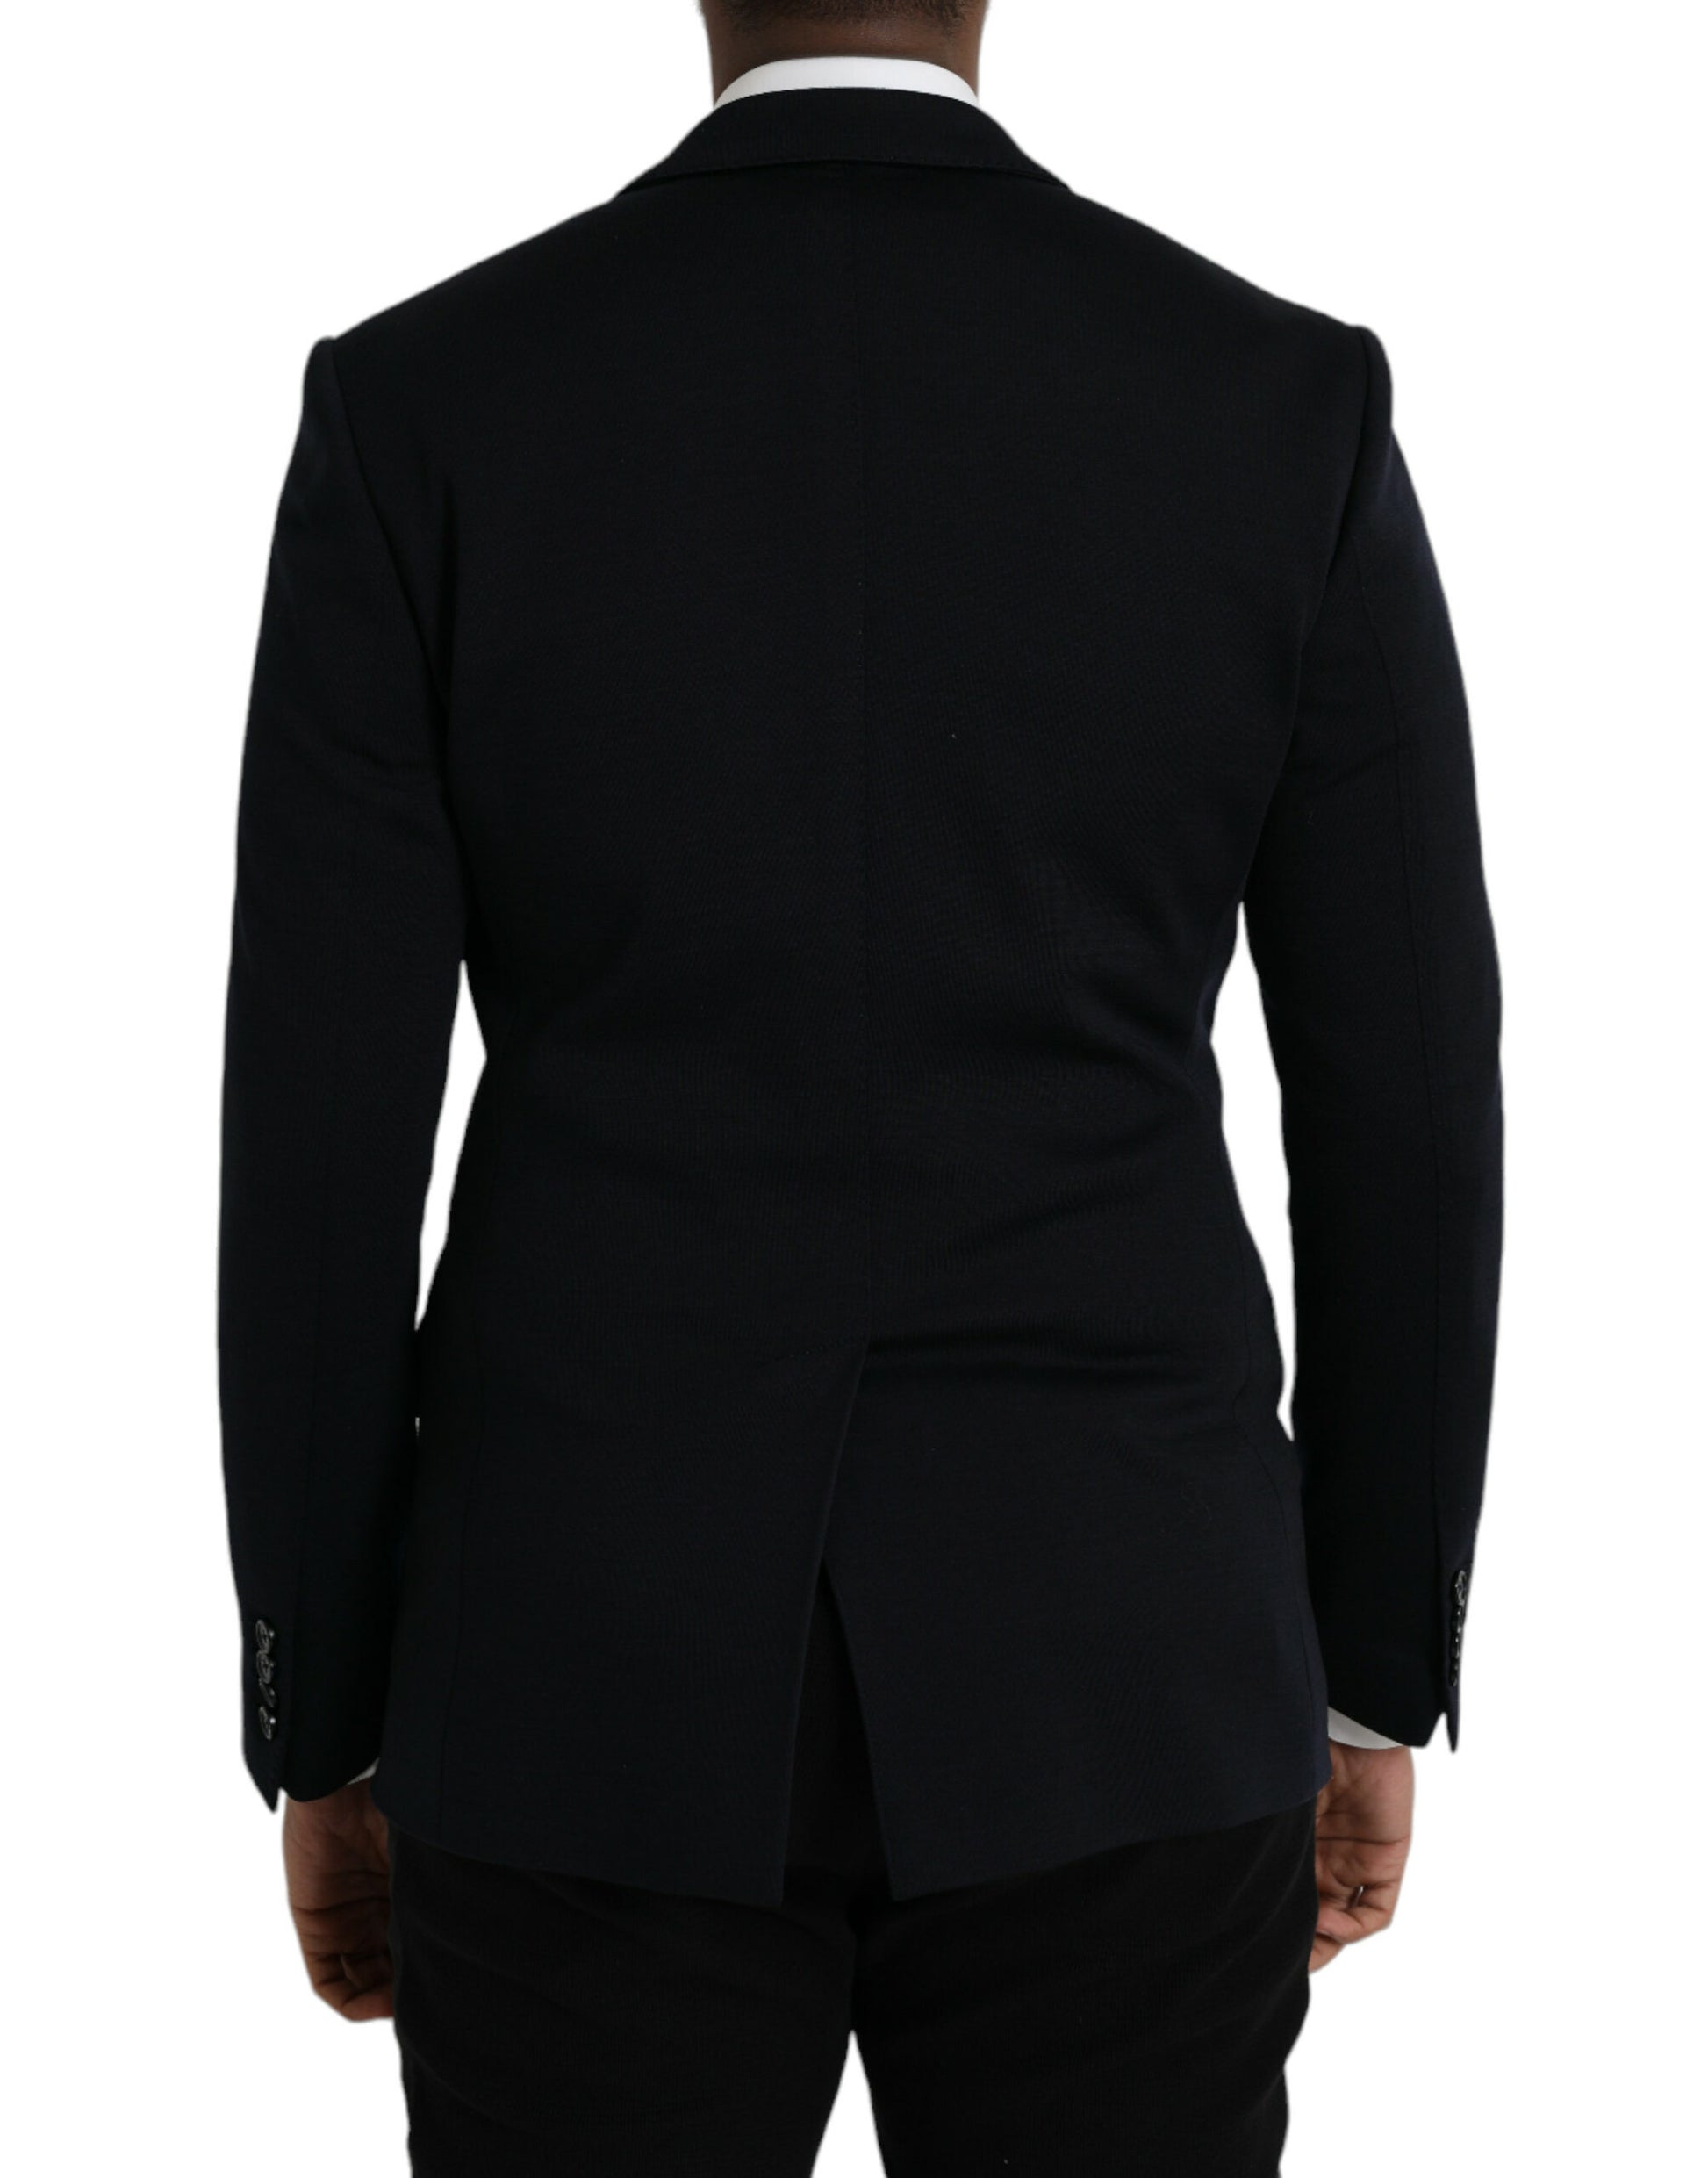 Black Wool Notch Single Breasted Coat Blazer